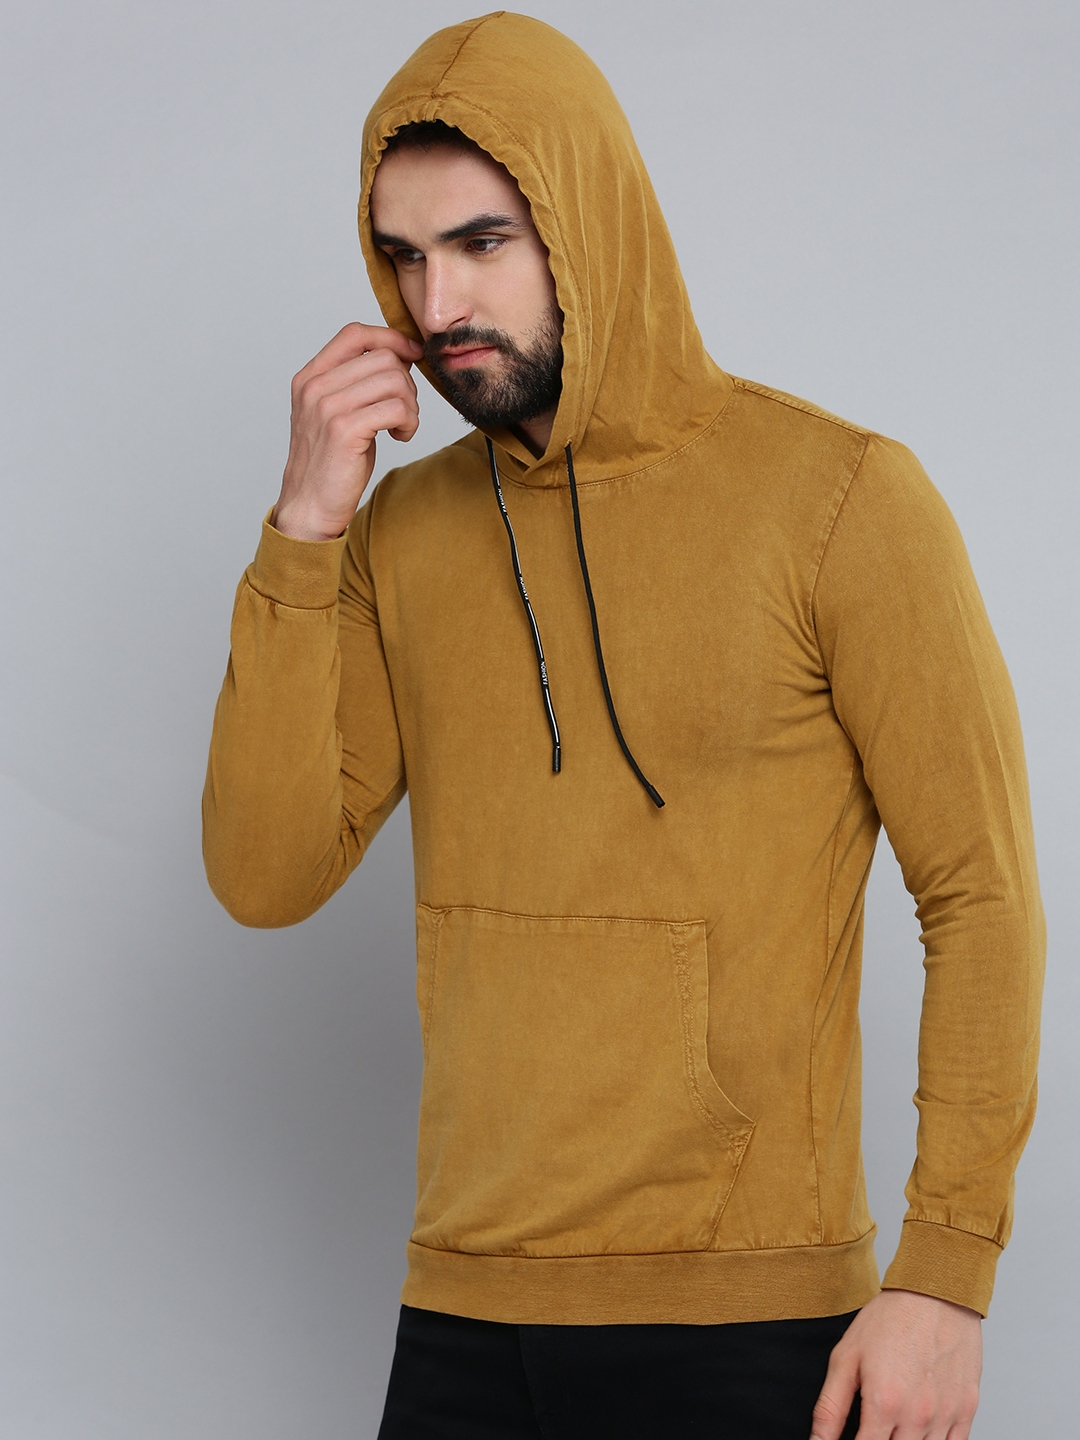 Men's Yellow Cotton Solid Hoodies